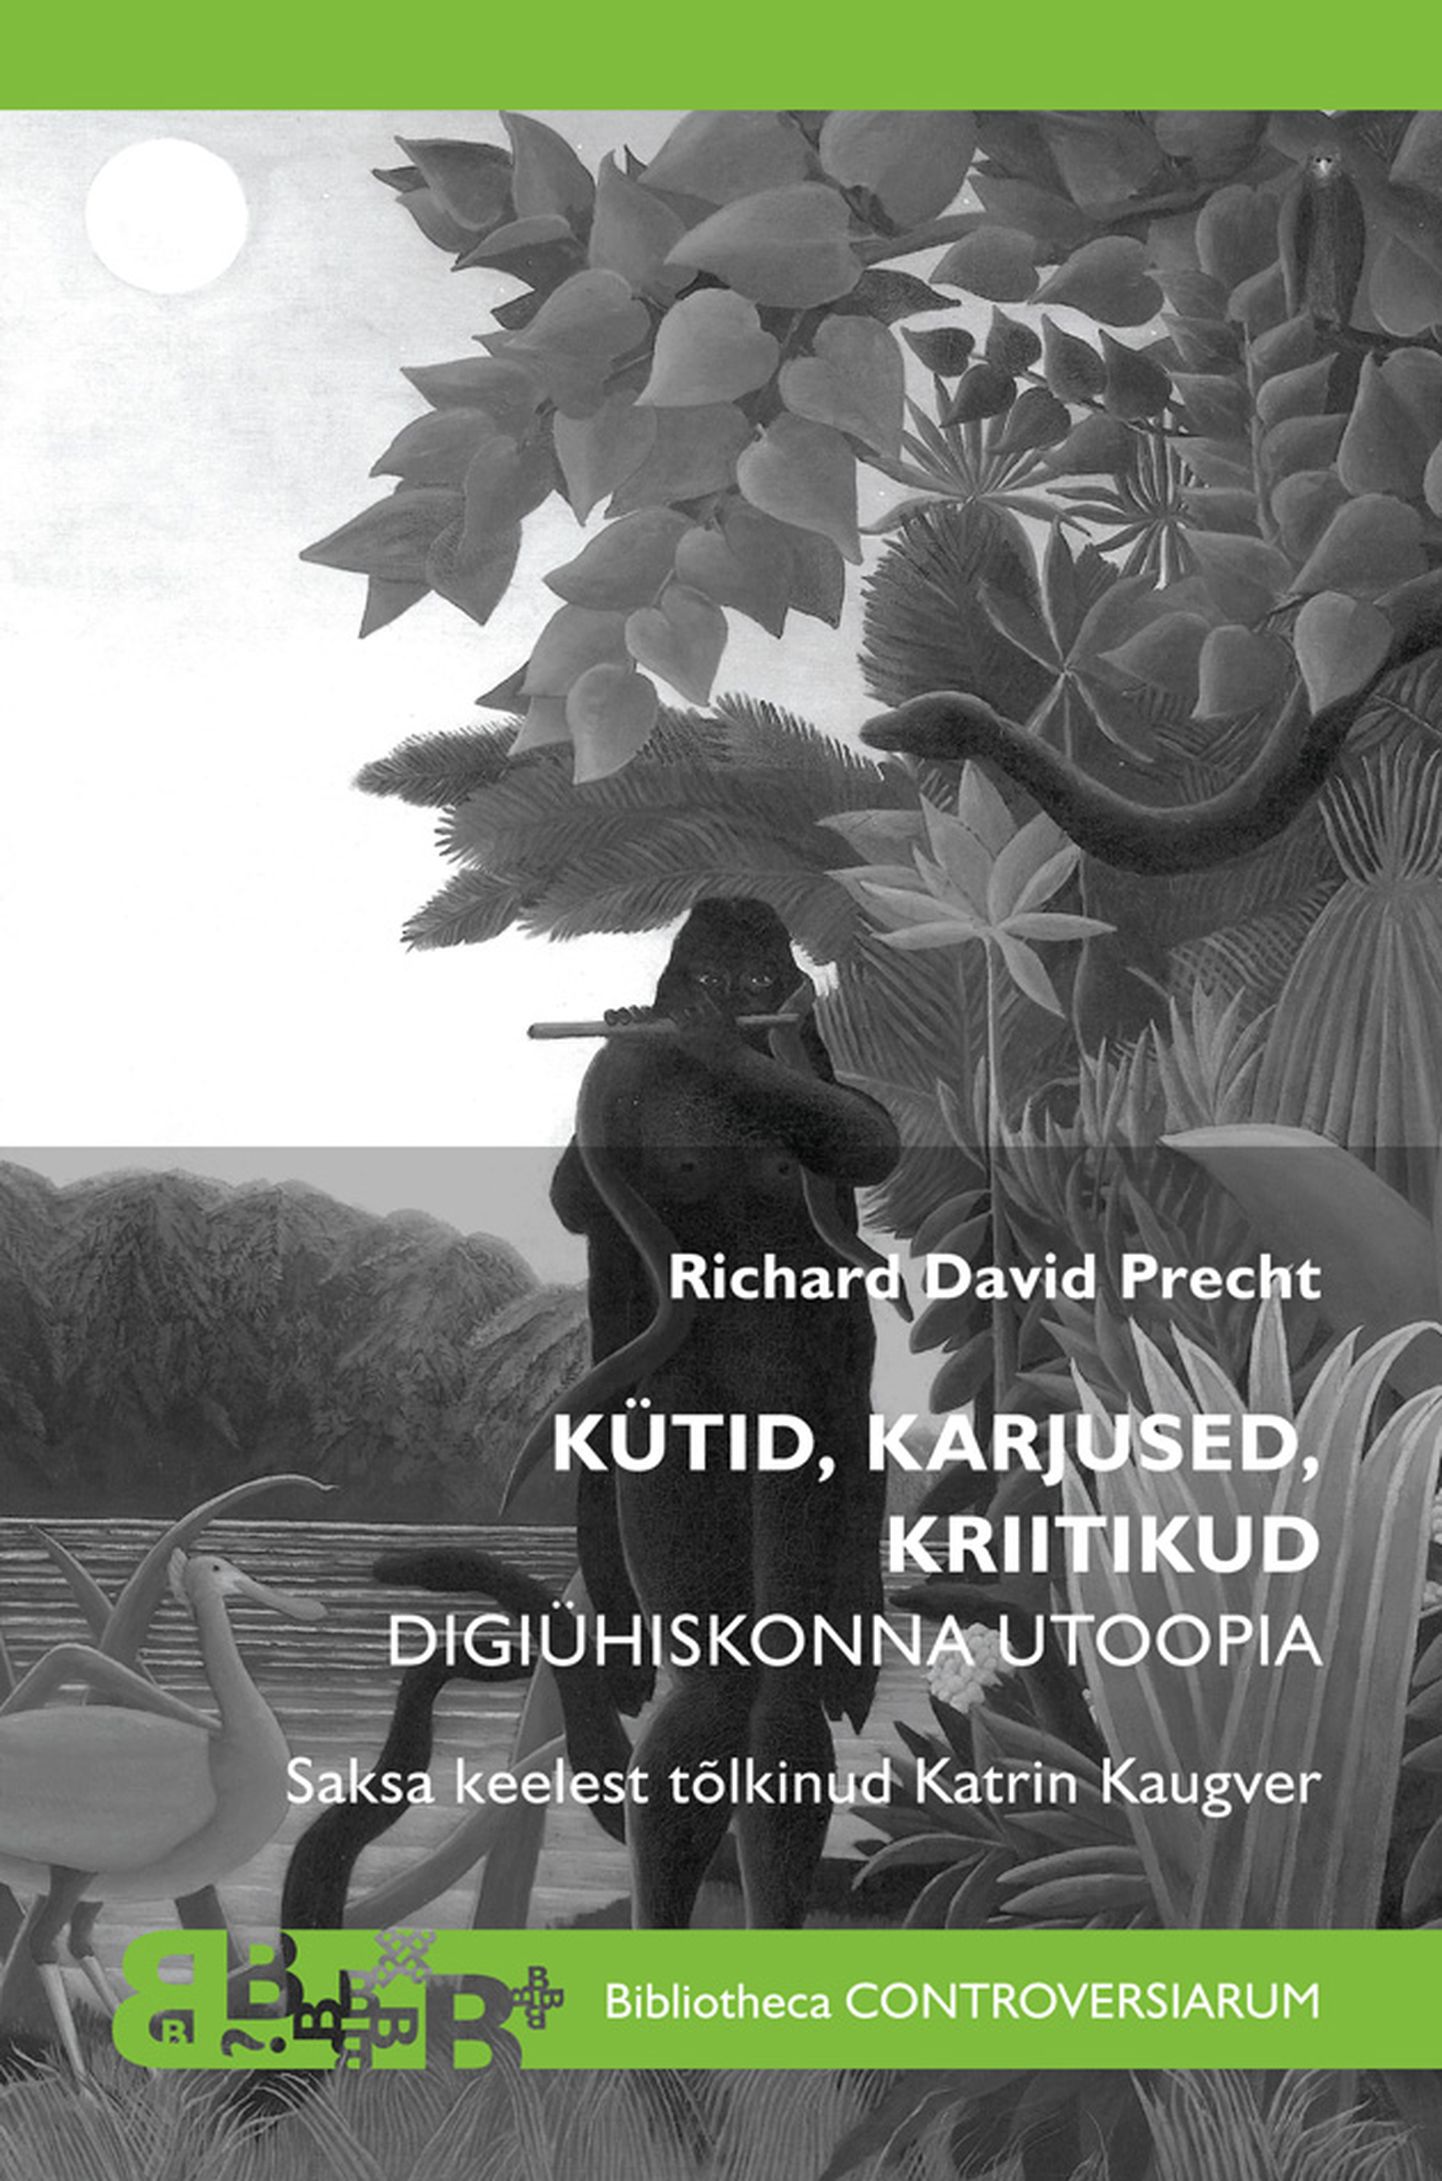 Richard David Prechti monograafia «Kütid, karjused, kriitikud: Digiühiskonna utoopia».